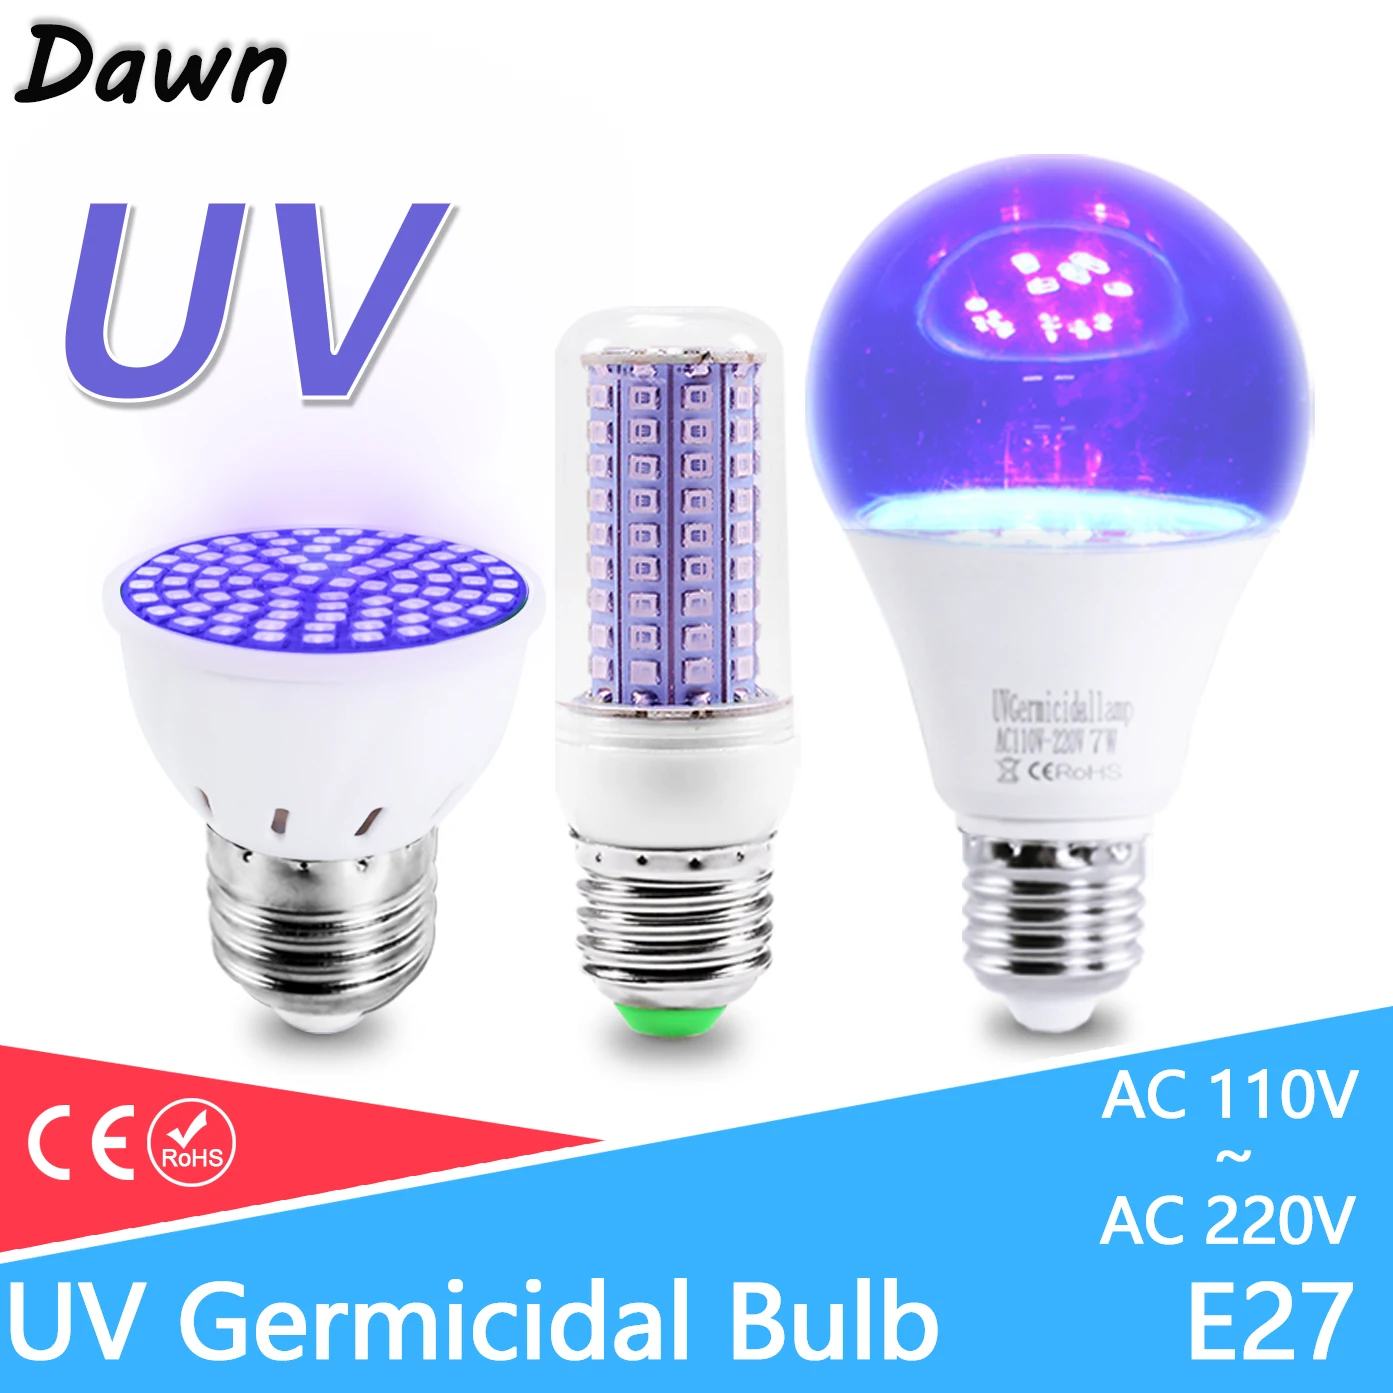 UV Disinfection Sterilizer Lamp E27 MR16 Bulb UVC Kill Mite Ultraviolet Ozone Germicidal Lights For Disinfect